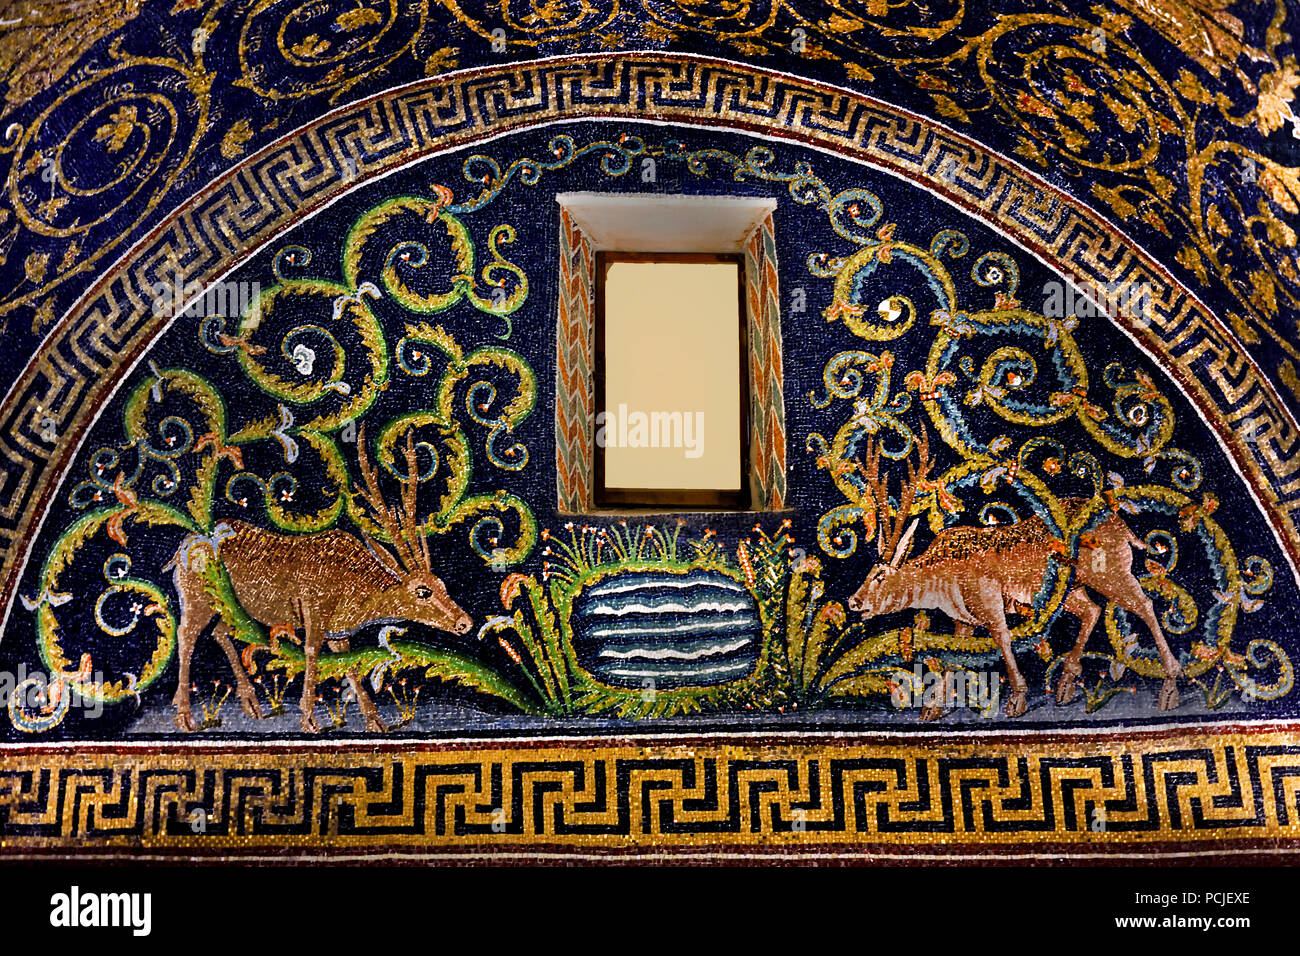 Lünette mit einem deerin das Mausoleum der Galla Placidia in Ravenna (386 - 450 AD) Mosaiken (späte römische und byzantinische Architektur,) Emilia-Romagna - Nördliche Italien. (UNESCO Weltkulturerbe) Stockfoto